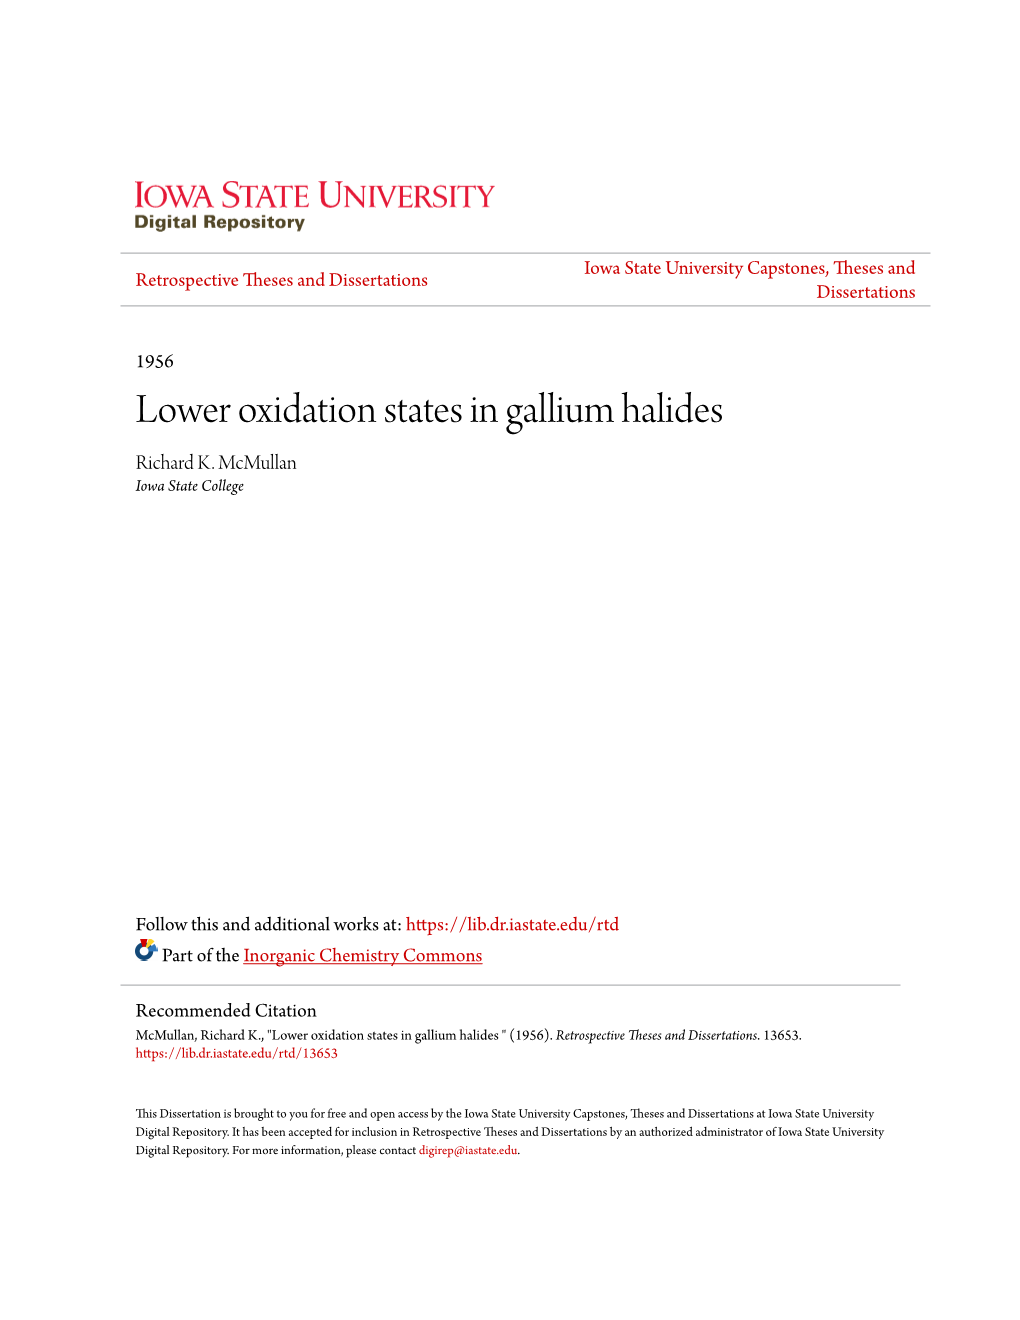 Lower Oxidation States in Gallium Halides Richard K